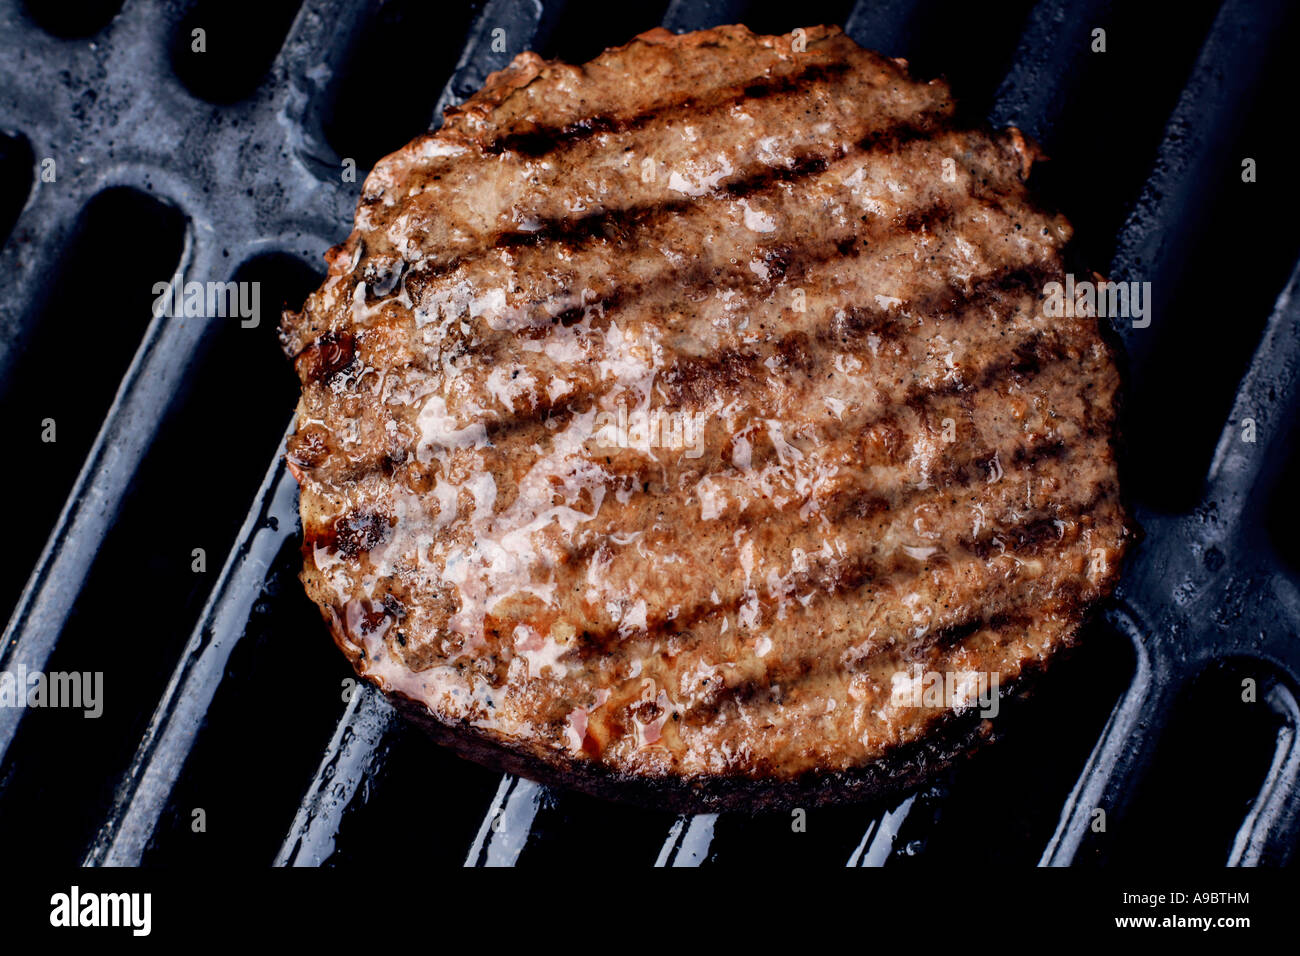 Hamburger grillé juteux sur le barbecue avec grillemarks Banque D'Images